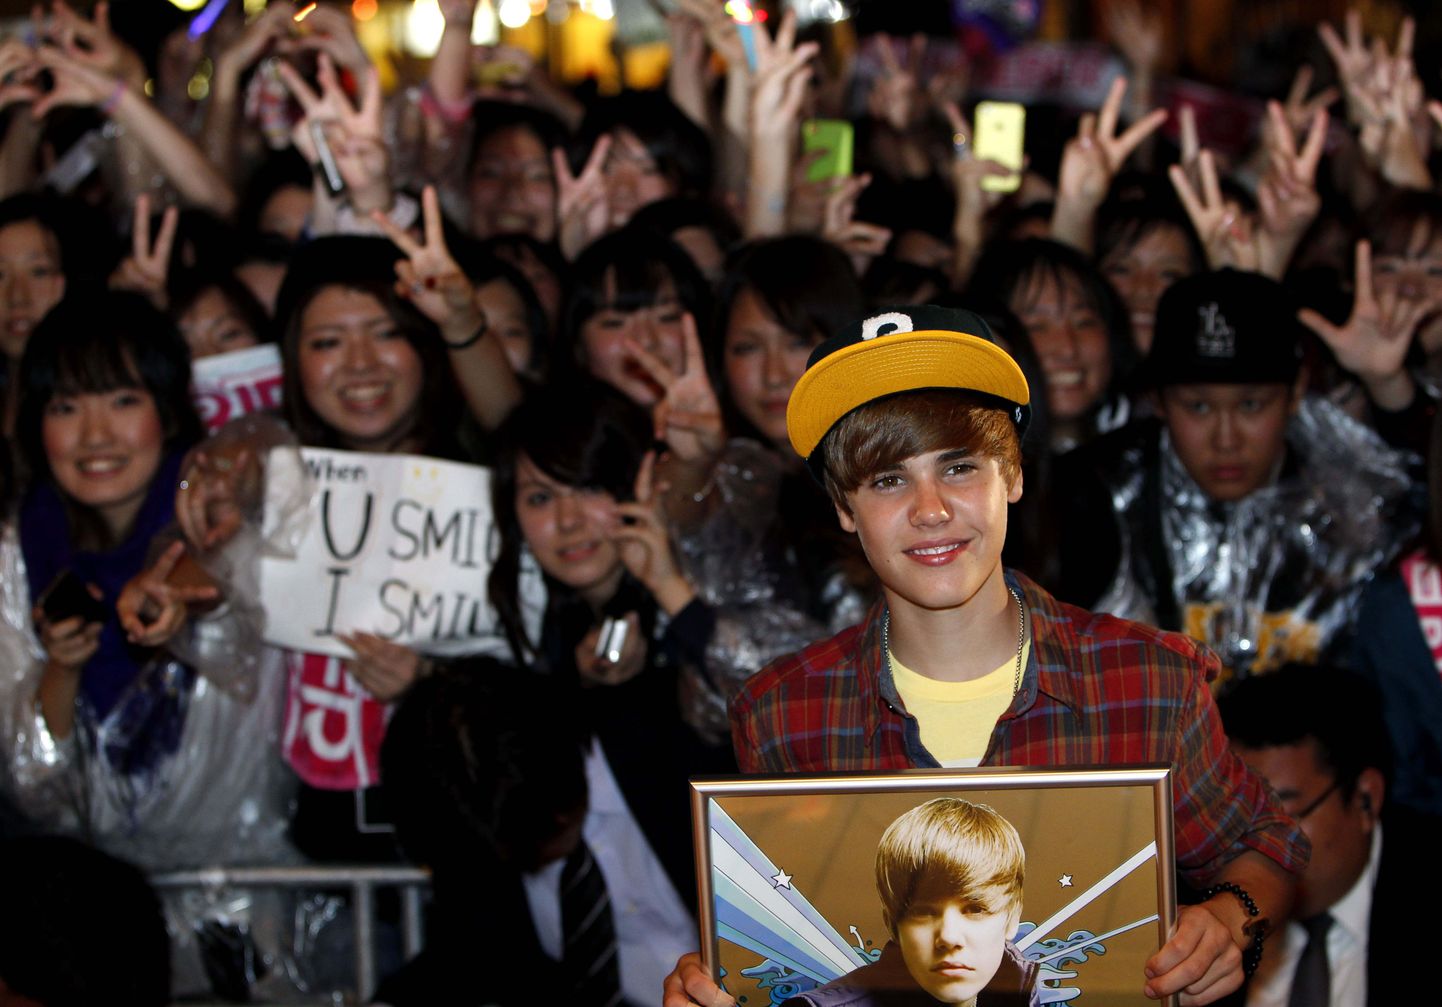 Justin Bieber on popp poiss. Pilt tehtud promoüritusel Tokyos ülemöödunud nädalal